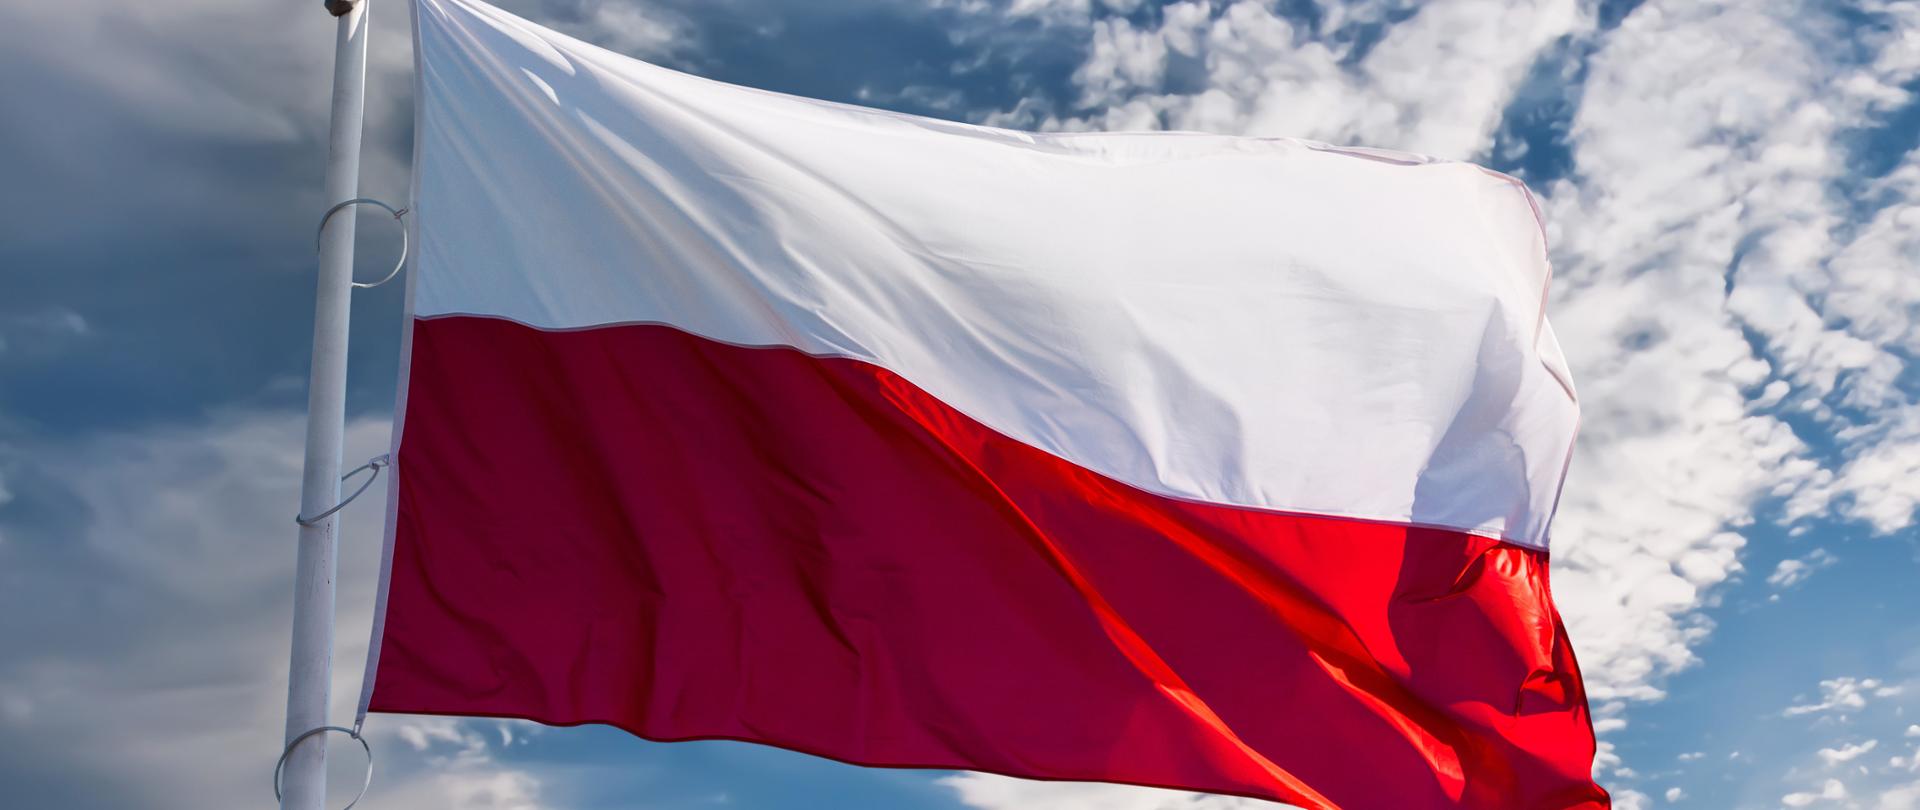 Na zdjęciu widać flagę Polski na tle niebieskiego nieba